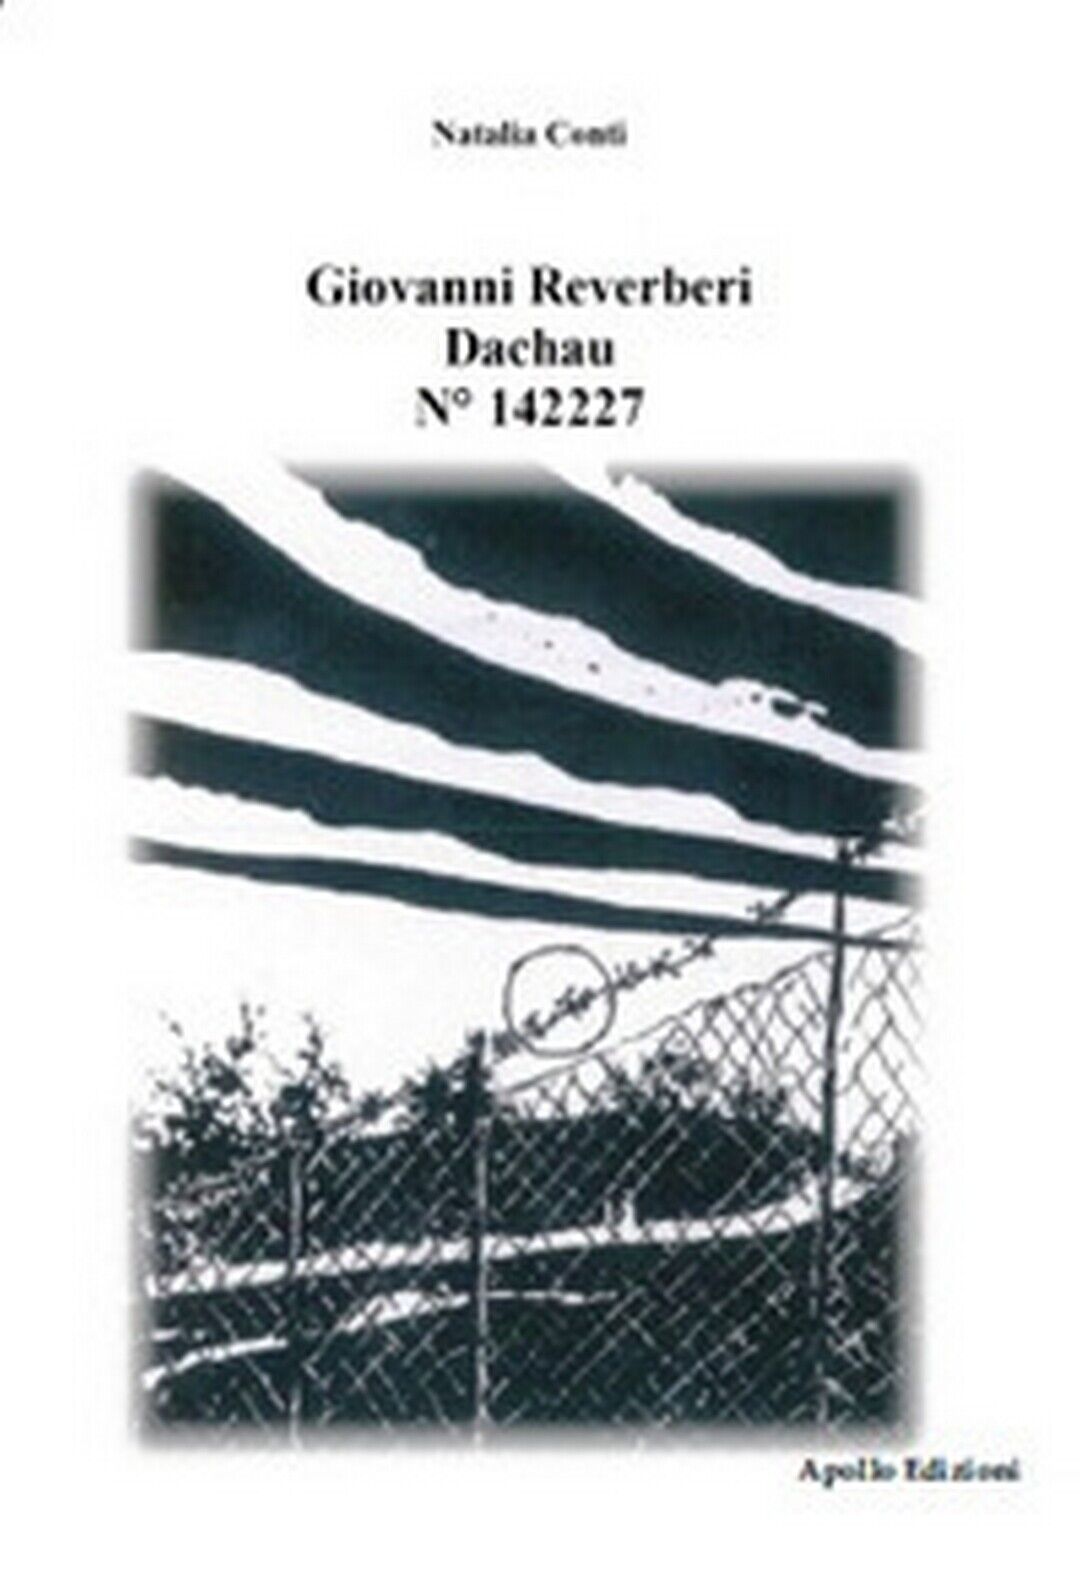 Giovanni Reverberi. Dachau N? 142227  di Natalia Conti,  2017,  Apollo Edizioni libro usato